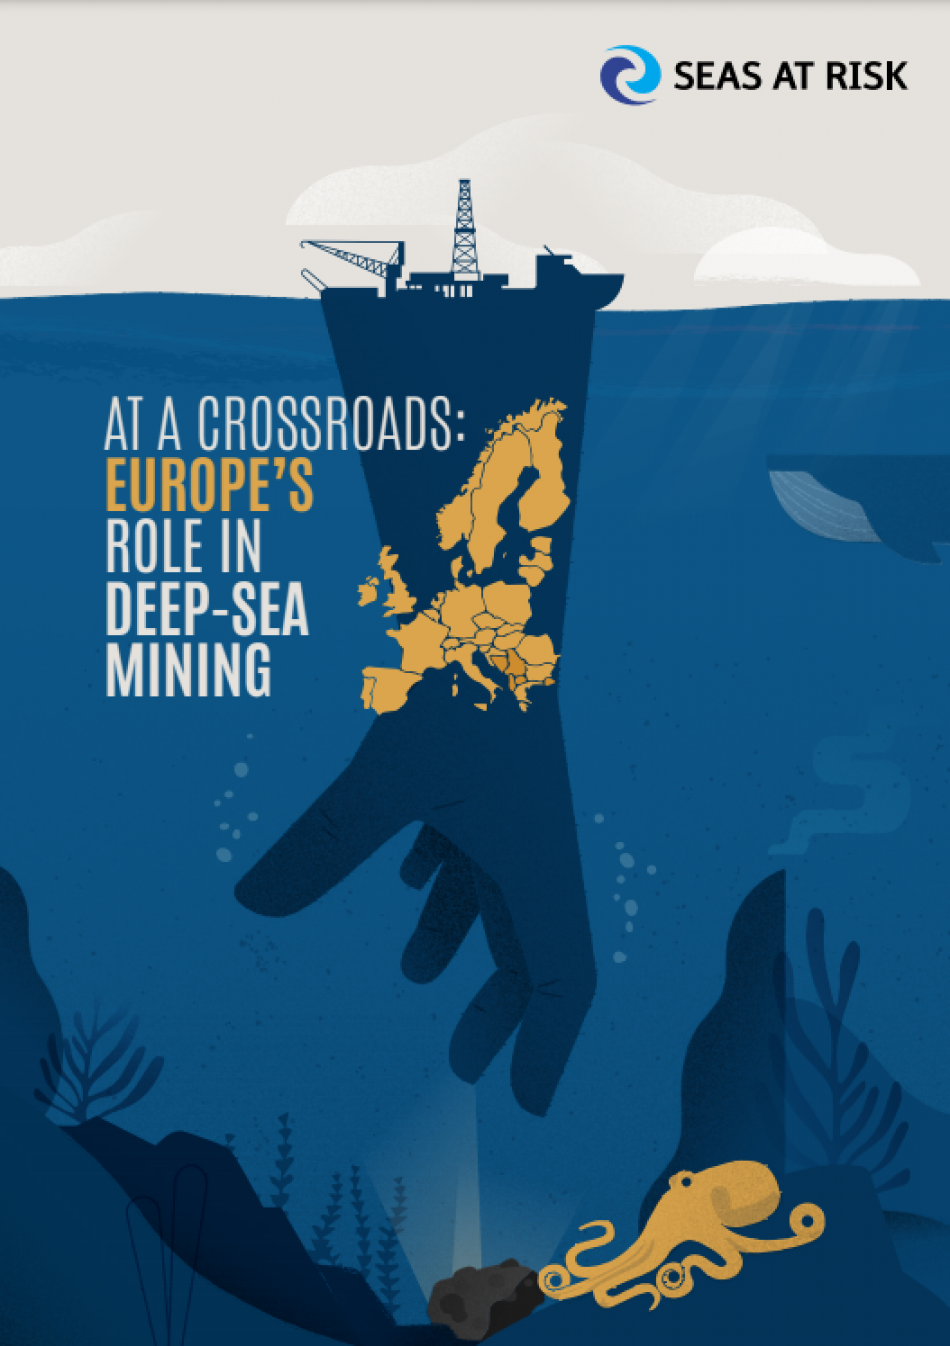 Europa en la encrucijada: proteger los fondos marinos o dejar que la minería los destruya